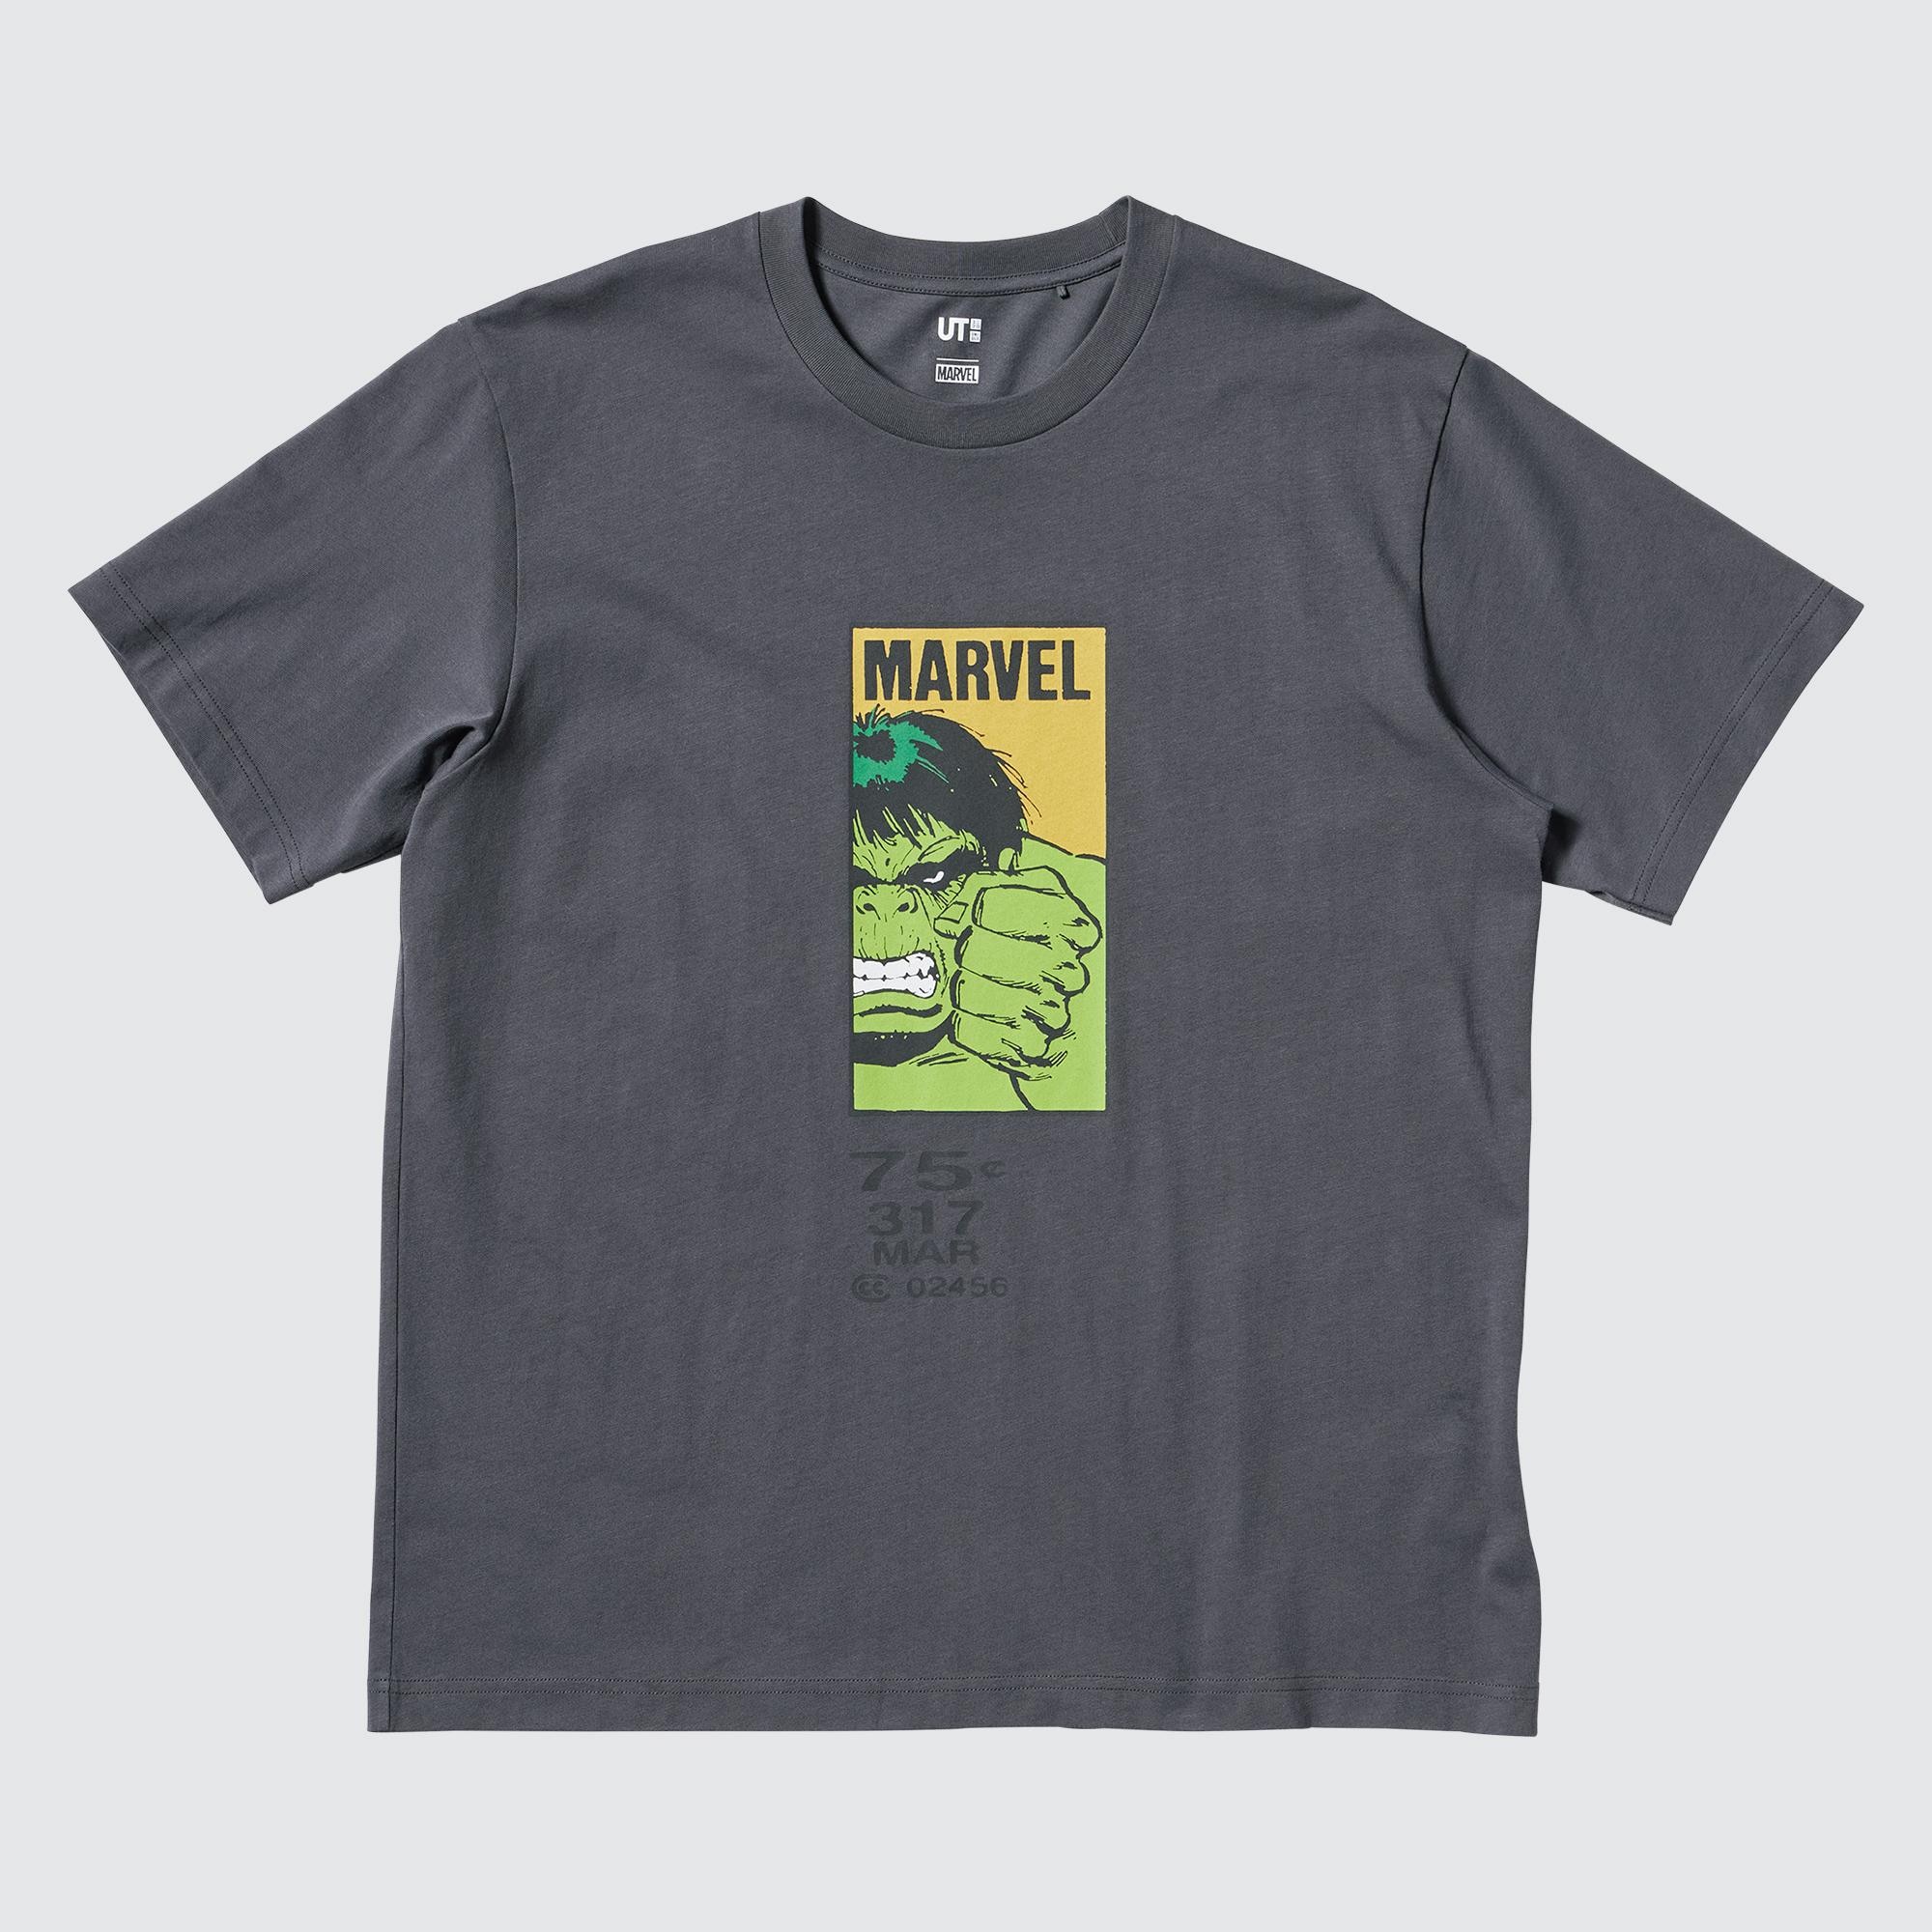 MAGIC FOR ALL FOREVER UT (Short-Sleeve Graphic T-Shirt) (Hulk)